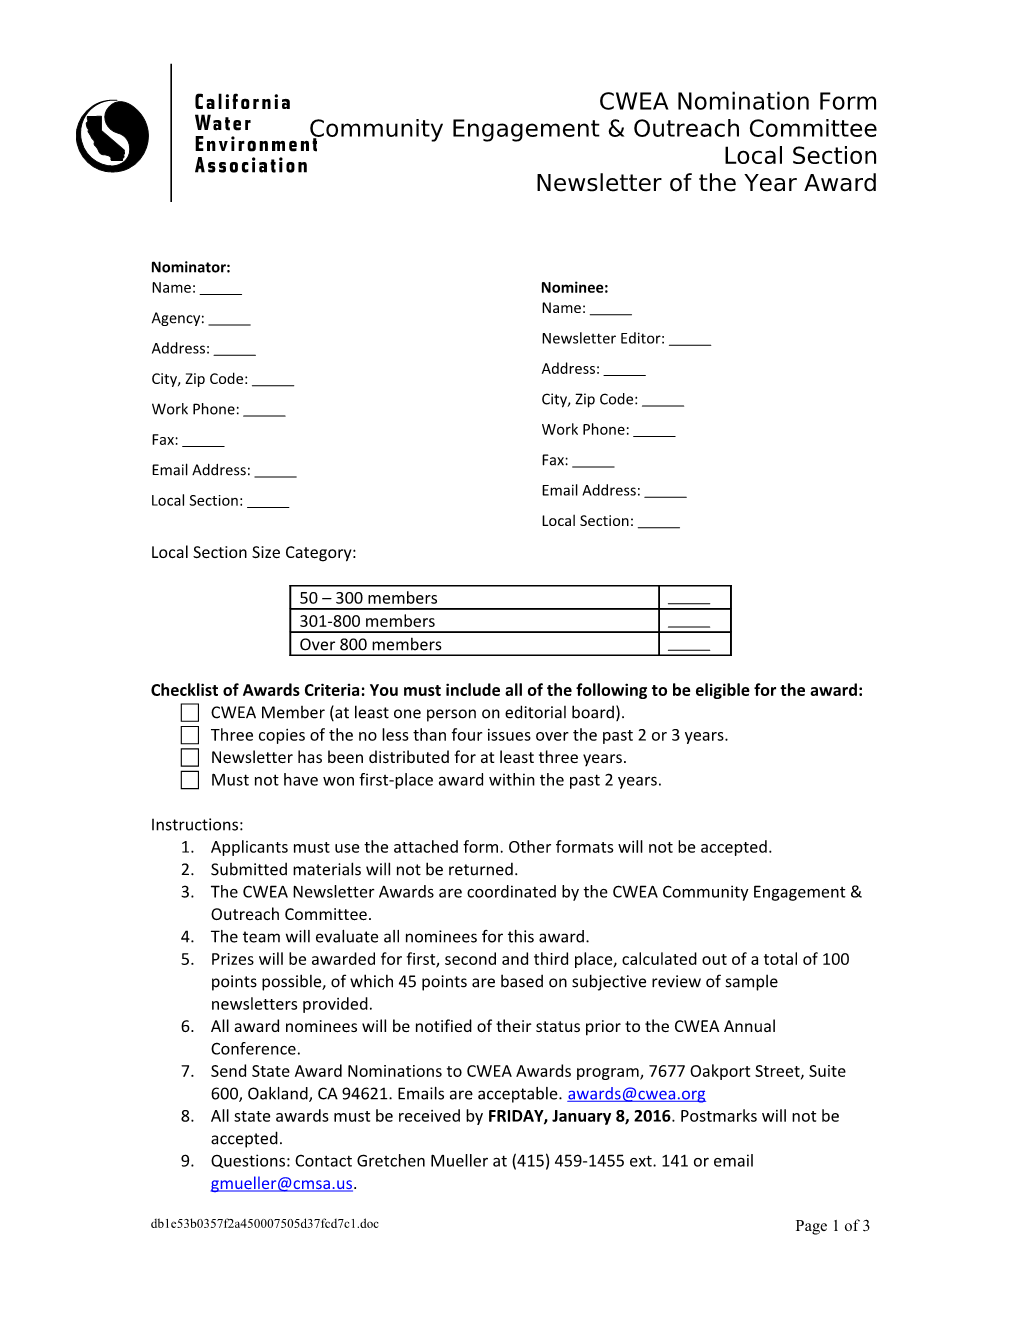 CWEA Nomination Form